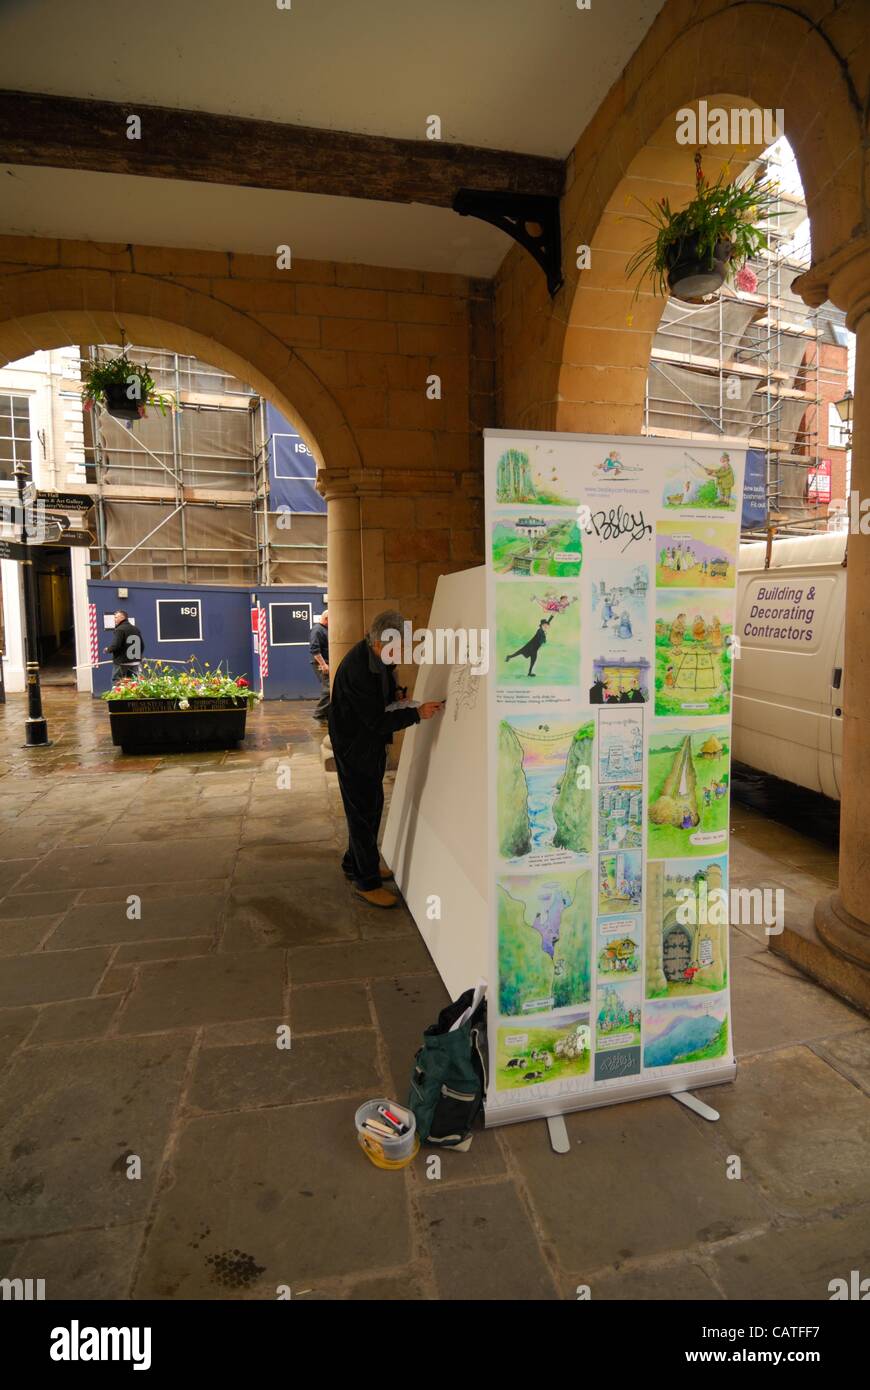 Vendredi, 20 avril, 2012, Shrewsbury, Royaume-Uni caricaturiste Rupert Besley Dessin à la place de la ville de Shrewsbury au cours du festival annuel. Banque D'Images